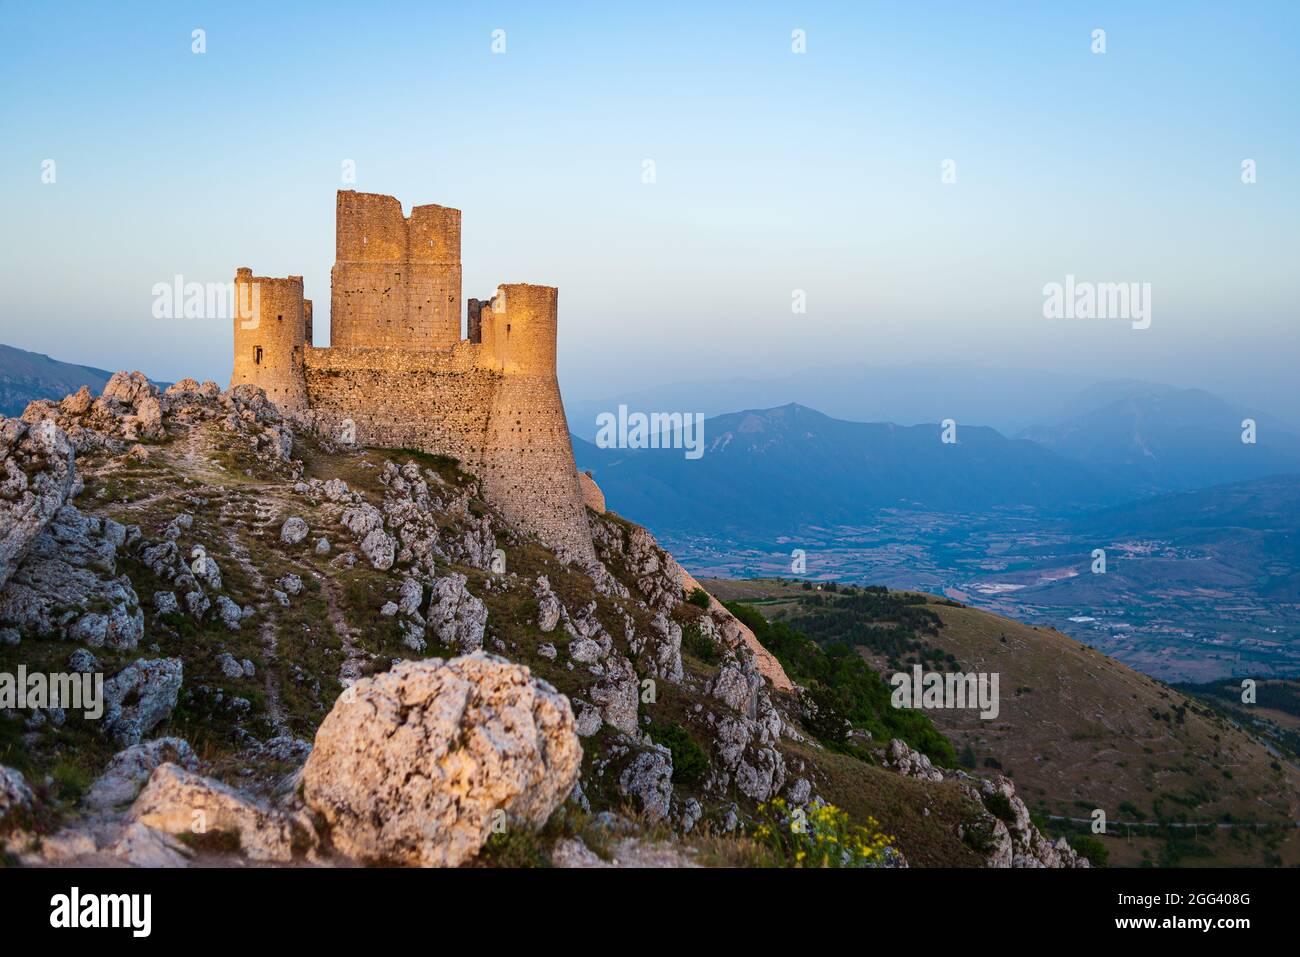 Les ruines du château en haut de la montagne à Rocca Calascio, destination de voyage italienne, point de repère dans le parc national de Gran Sasso, Abruzzo, Italie. Ciel bleu clair a Banque D'Images